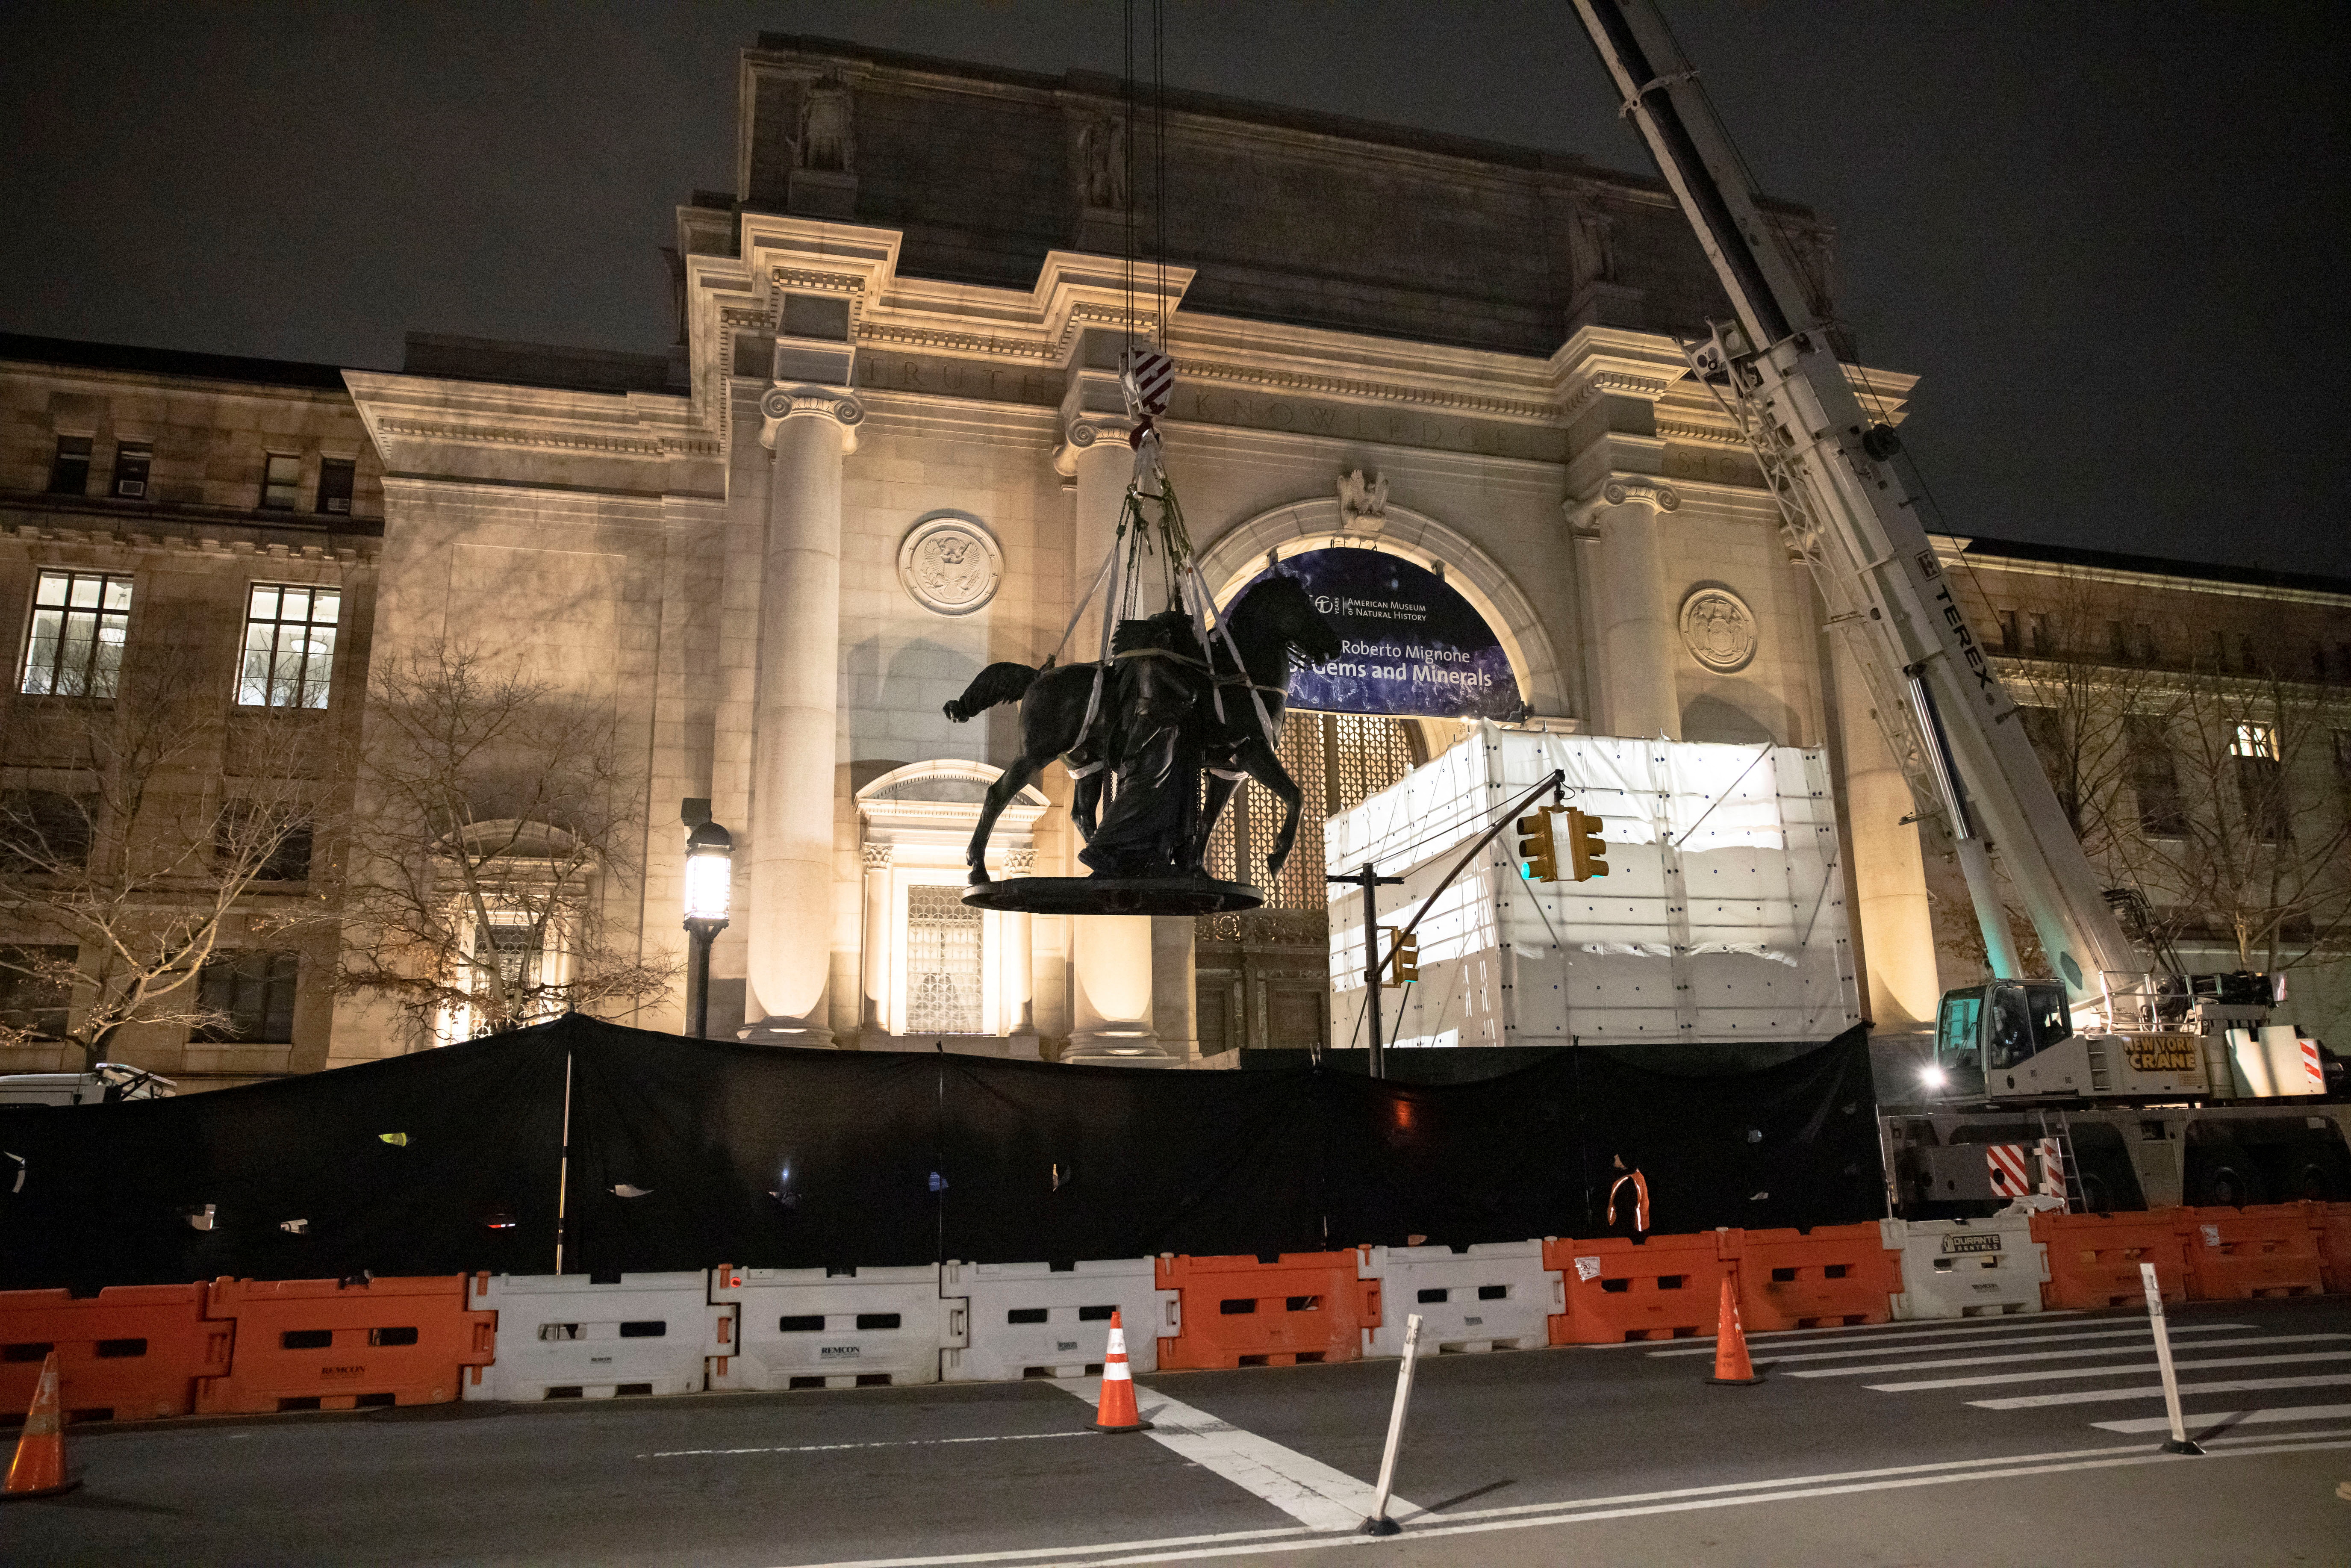 Trabajadores retiran la estatua de Theodore Roosevelt instalada frente a la entrada del Museo Americano de Historia Natural en Nueva York desde 1940 (REUTERS/Caitlin Ochs)